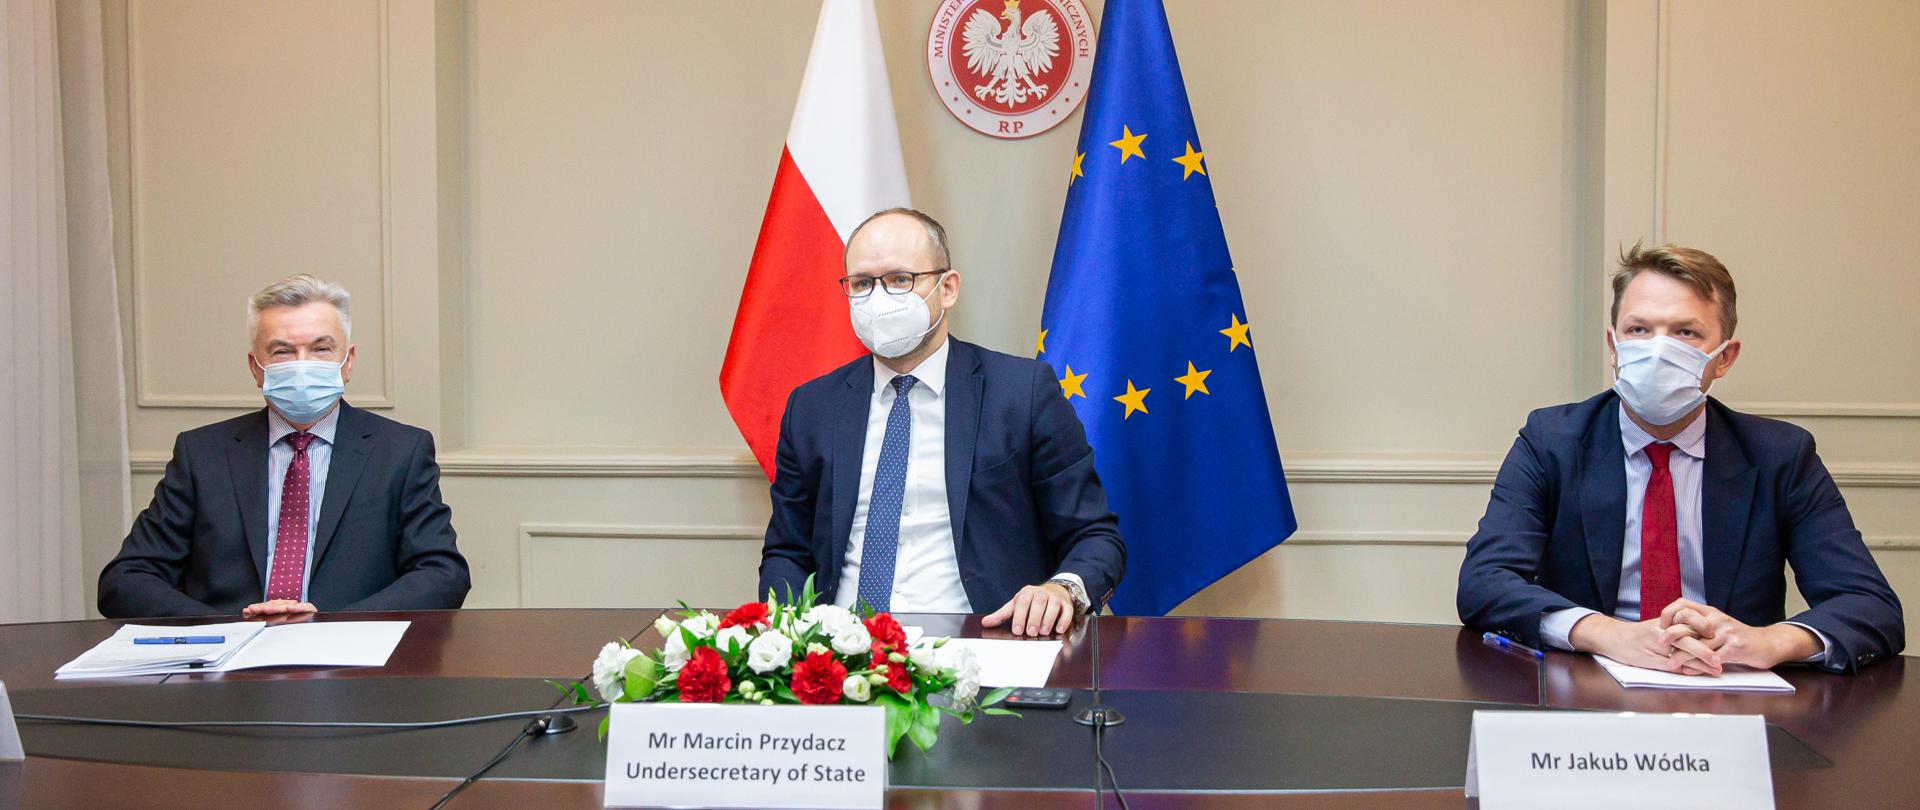 
Udział wiceministra spraw zagranicznych Marcina Przydacza w konferencji transatlantyckiej w obliczu skutków pandemii COVID-19